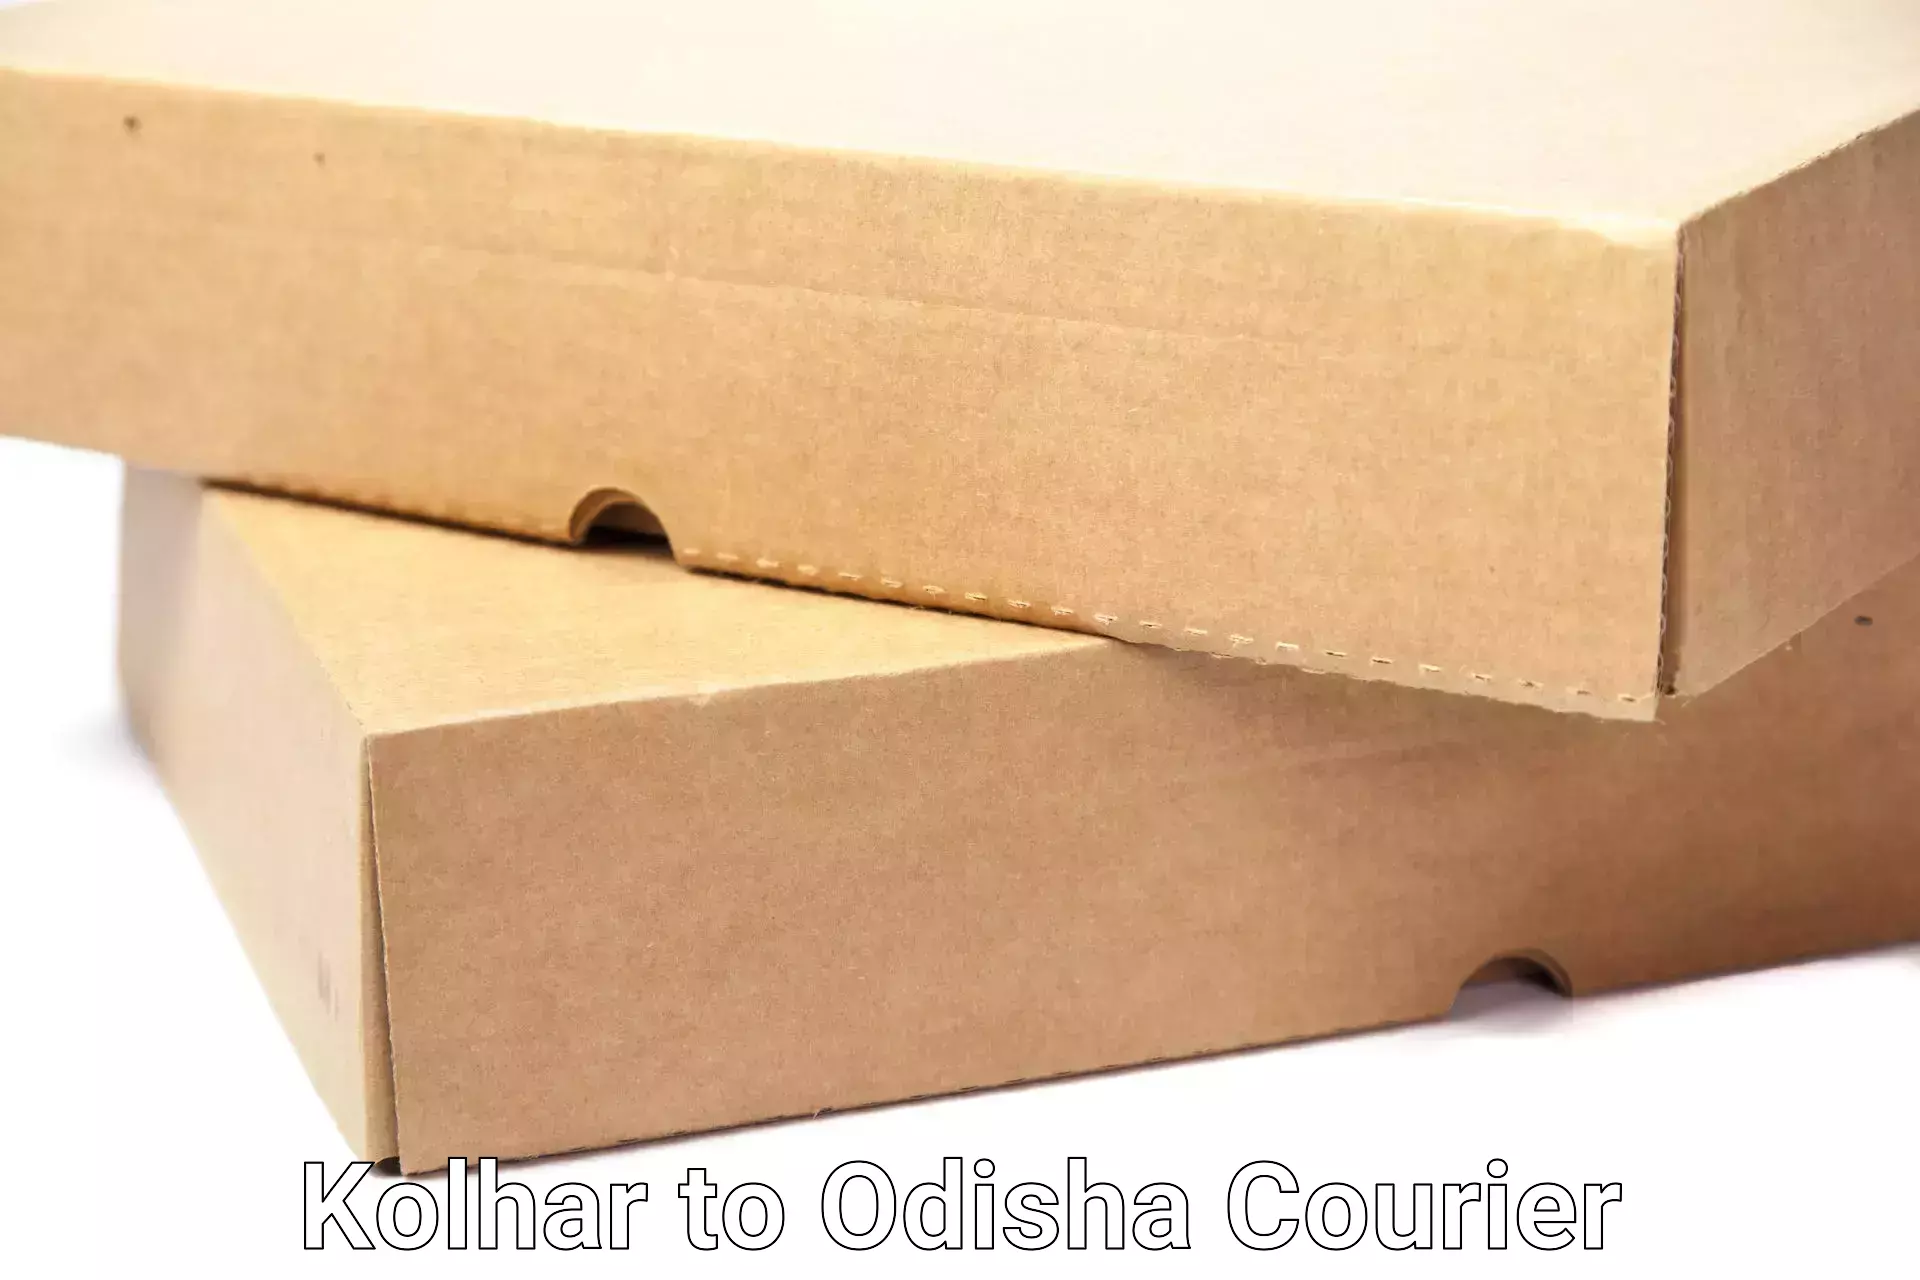 Household goods shipping in Kolhar to Rourkela